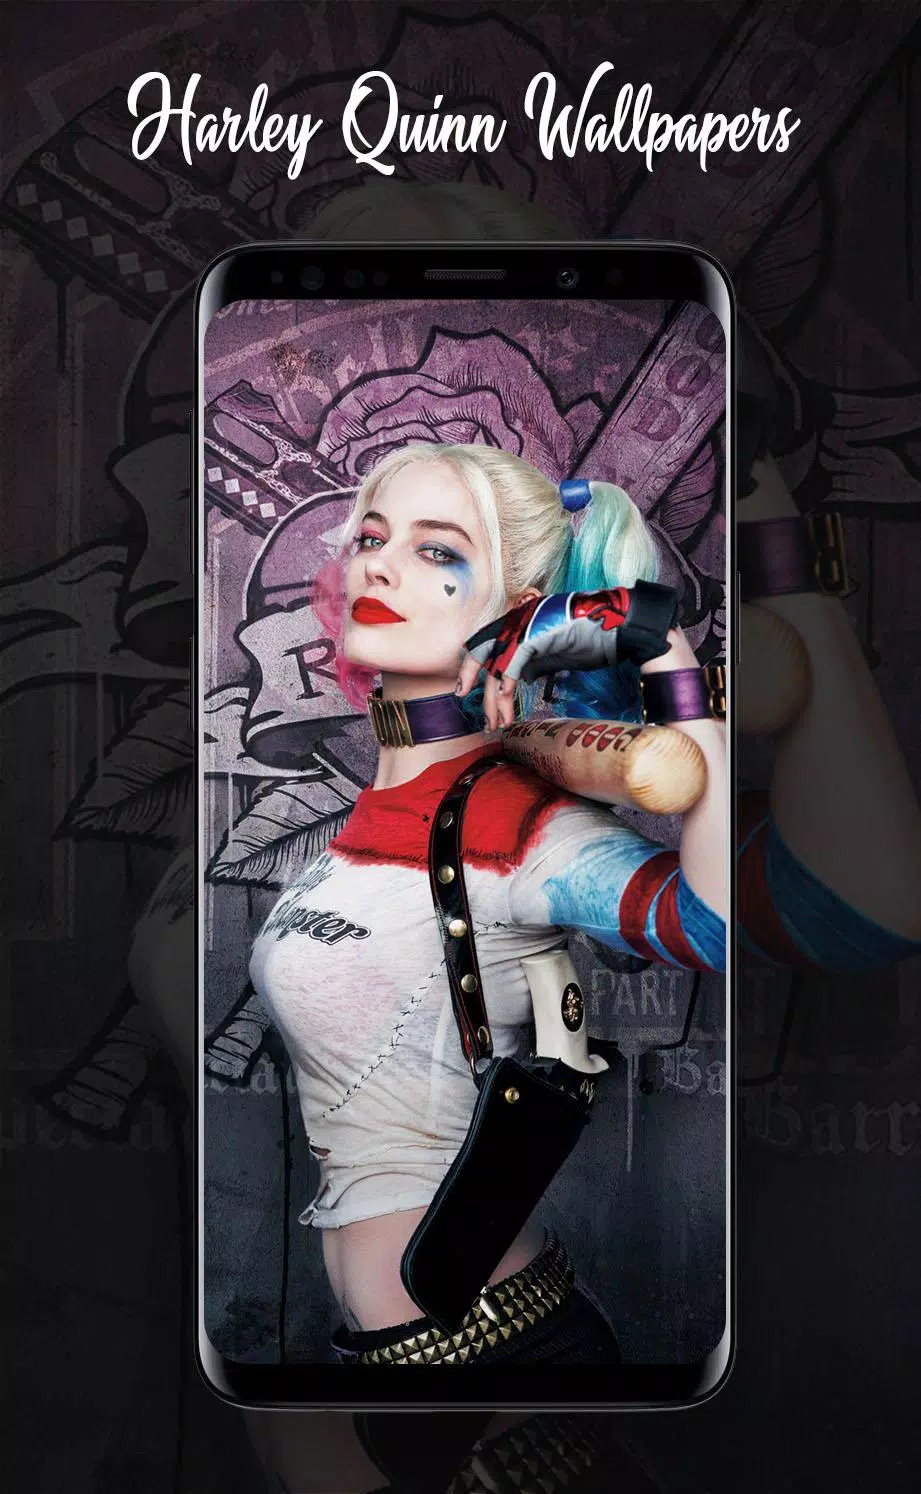 Hình nền Harley Quinn 4K là sự lựa chọn hoàn hảo cho những ai yêu thích sự độc đáo và mạnh mẽ. Với các chi tiết tinh tế và màu sắc đặc trưng của Harley Quinn, bạn sẽ bị thu hút ngay từ cái nhìn đầu tiên. Xem hình nền này và bạn sẽ được choáng ngợp bởi vẻ đẹp và sự quyến rũ của nhân vật này.